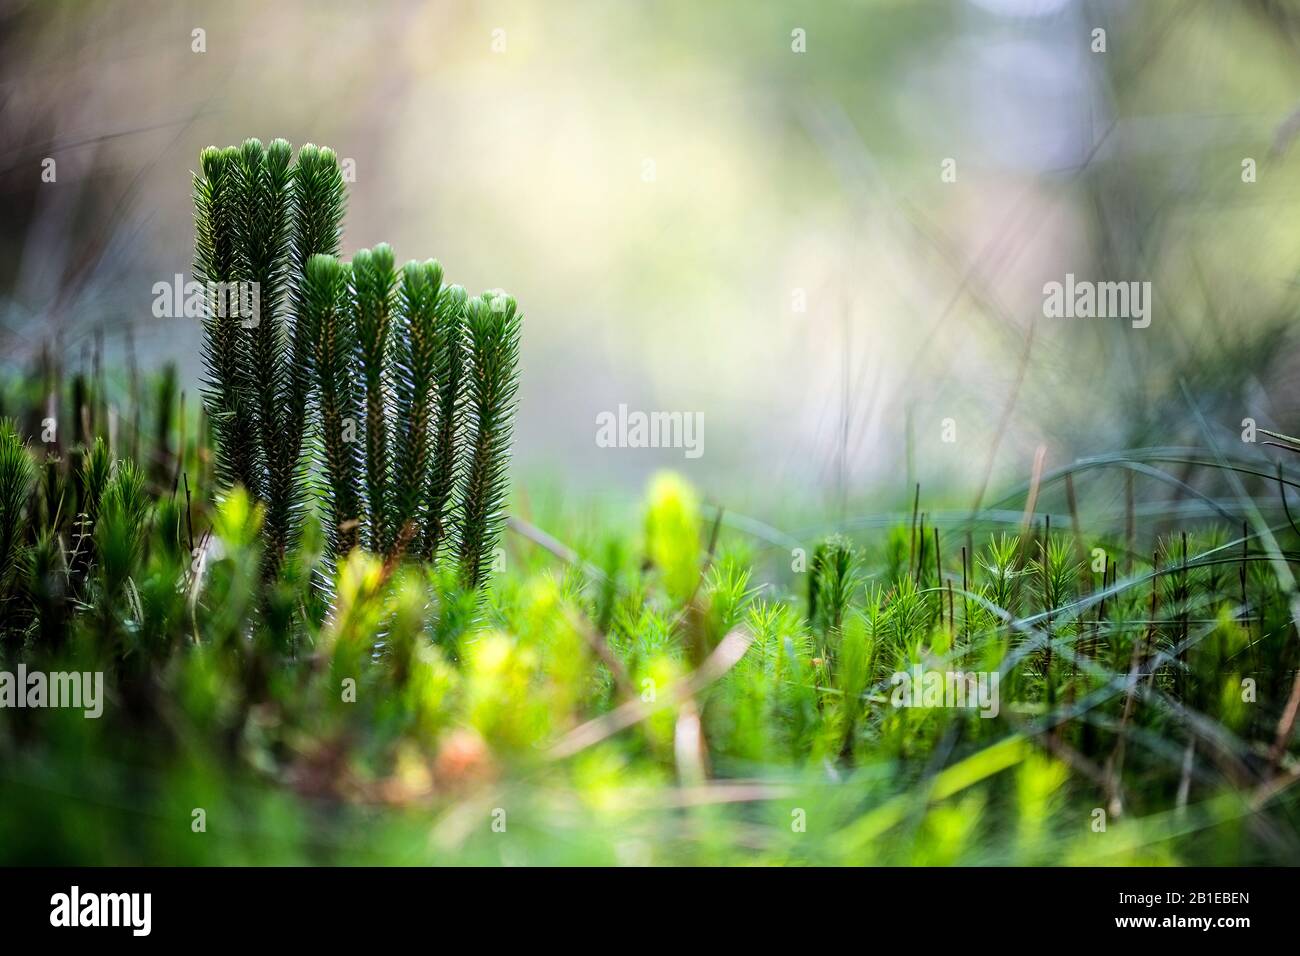 fir clubmoss, mountain clubmoss, fir-clubmoss (Huperzia selago, Lycopodium selago), in a forest, Netherlands, Drenthe Stock Photo